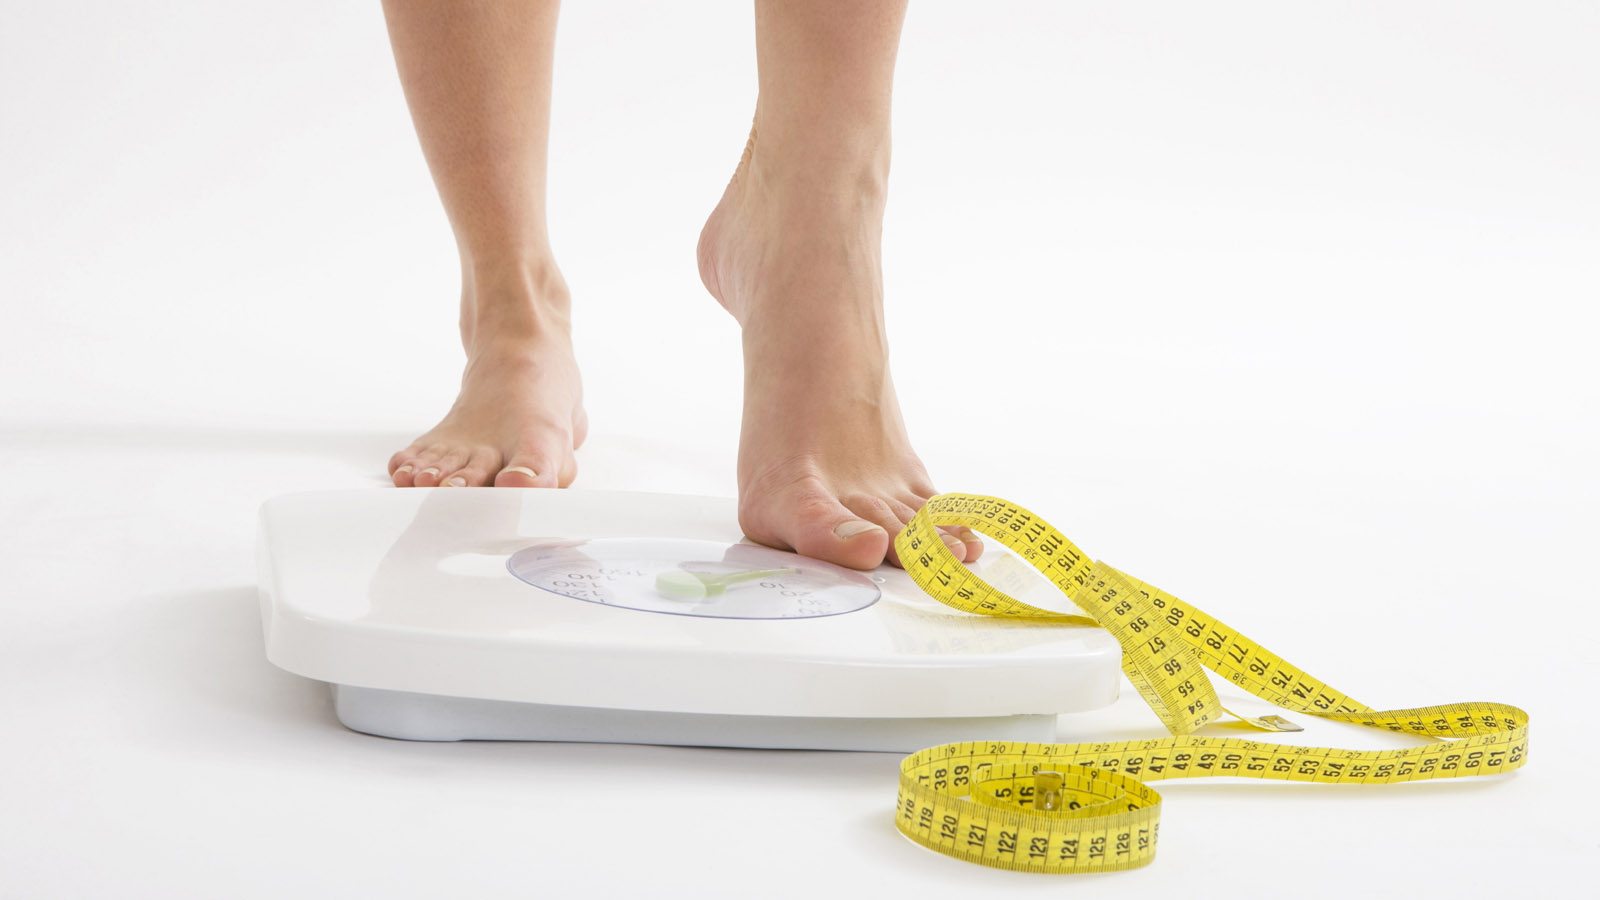 Duy trì cân nặng hợp lý